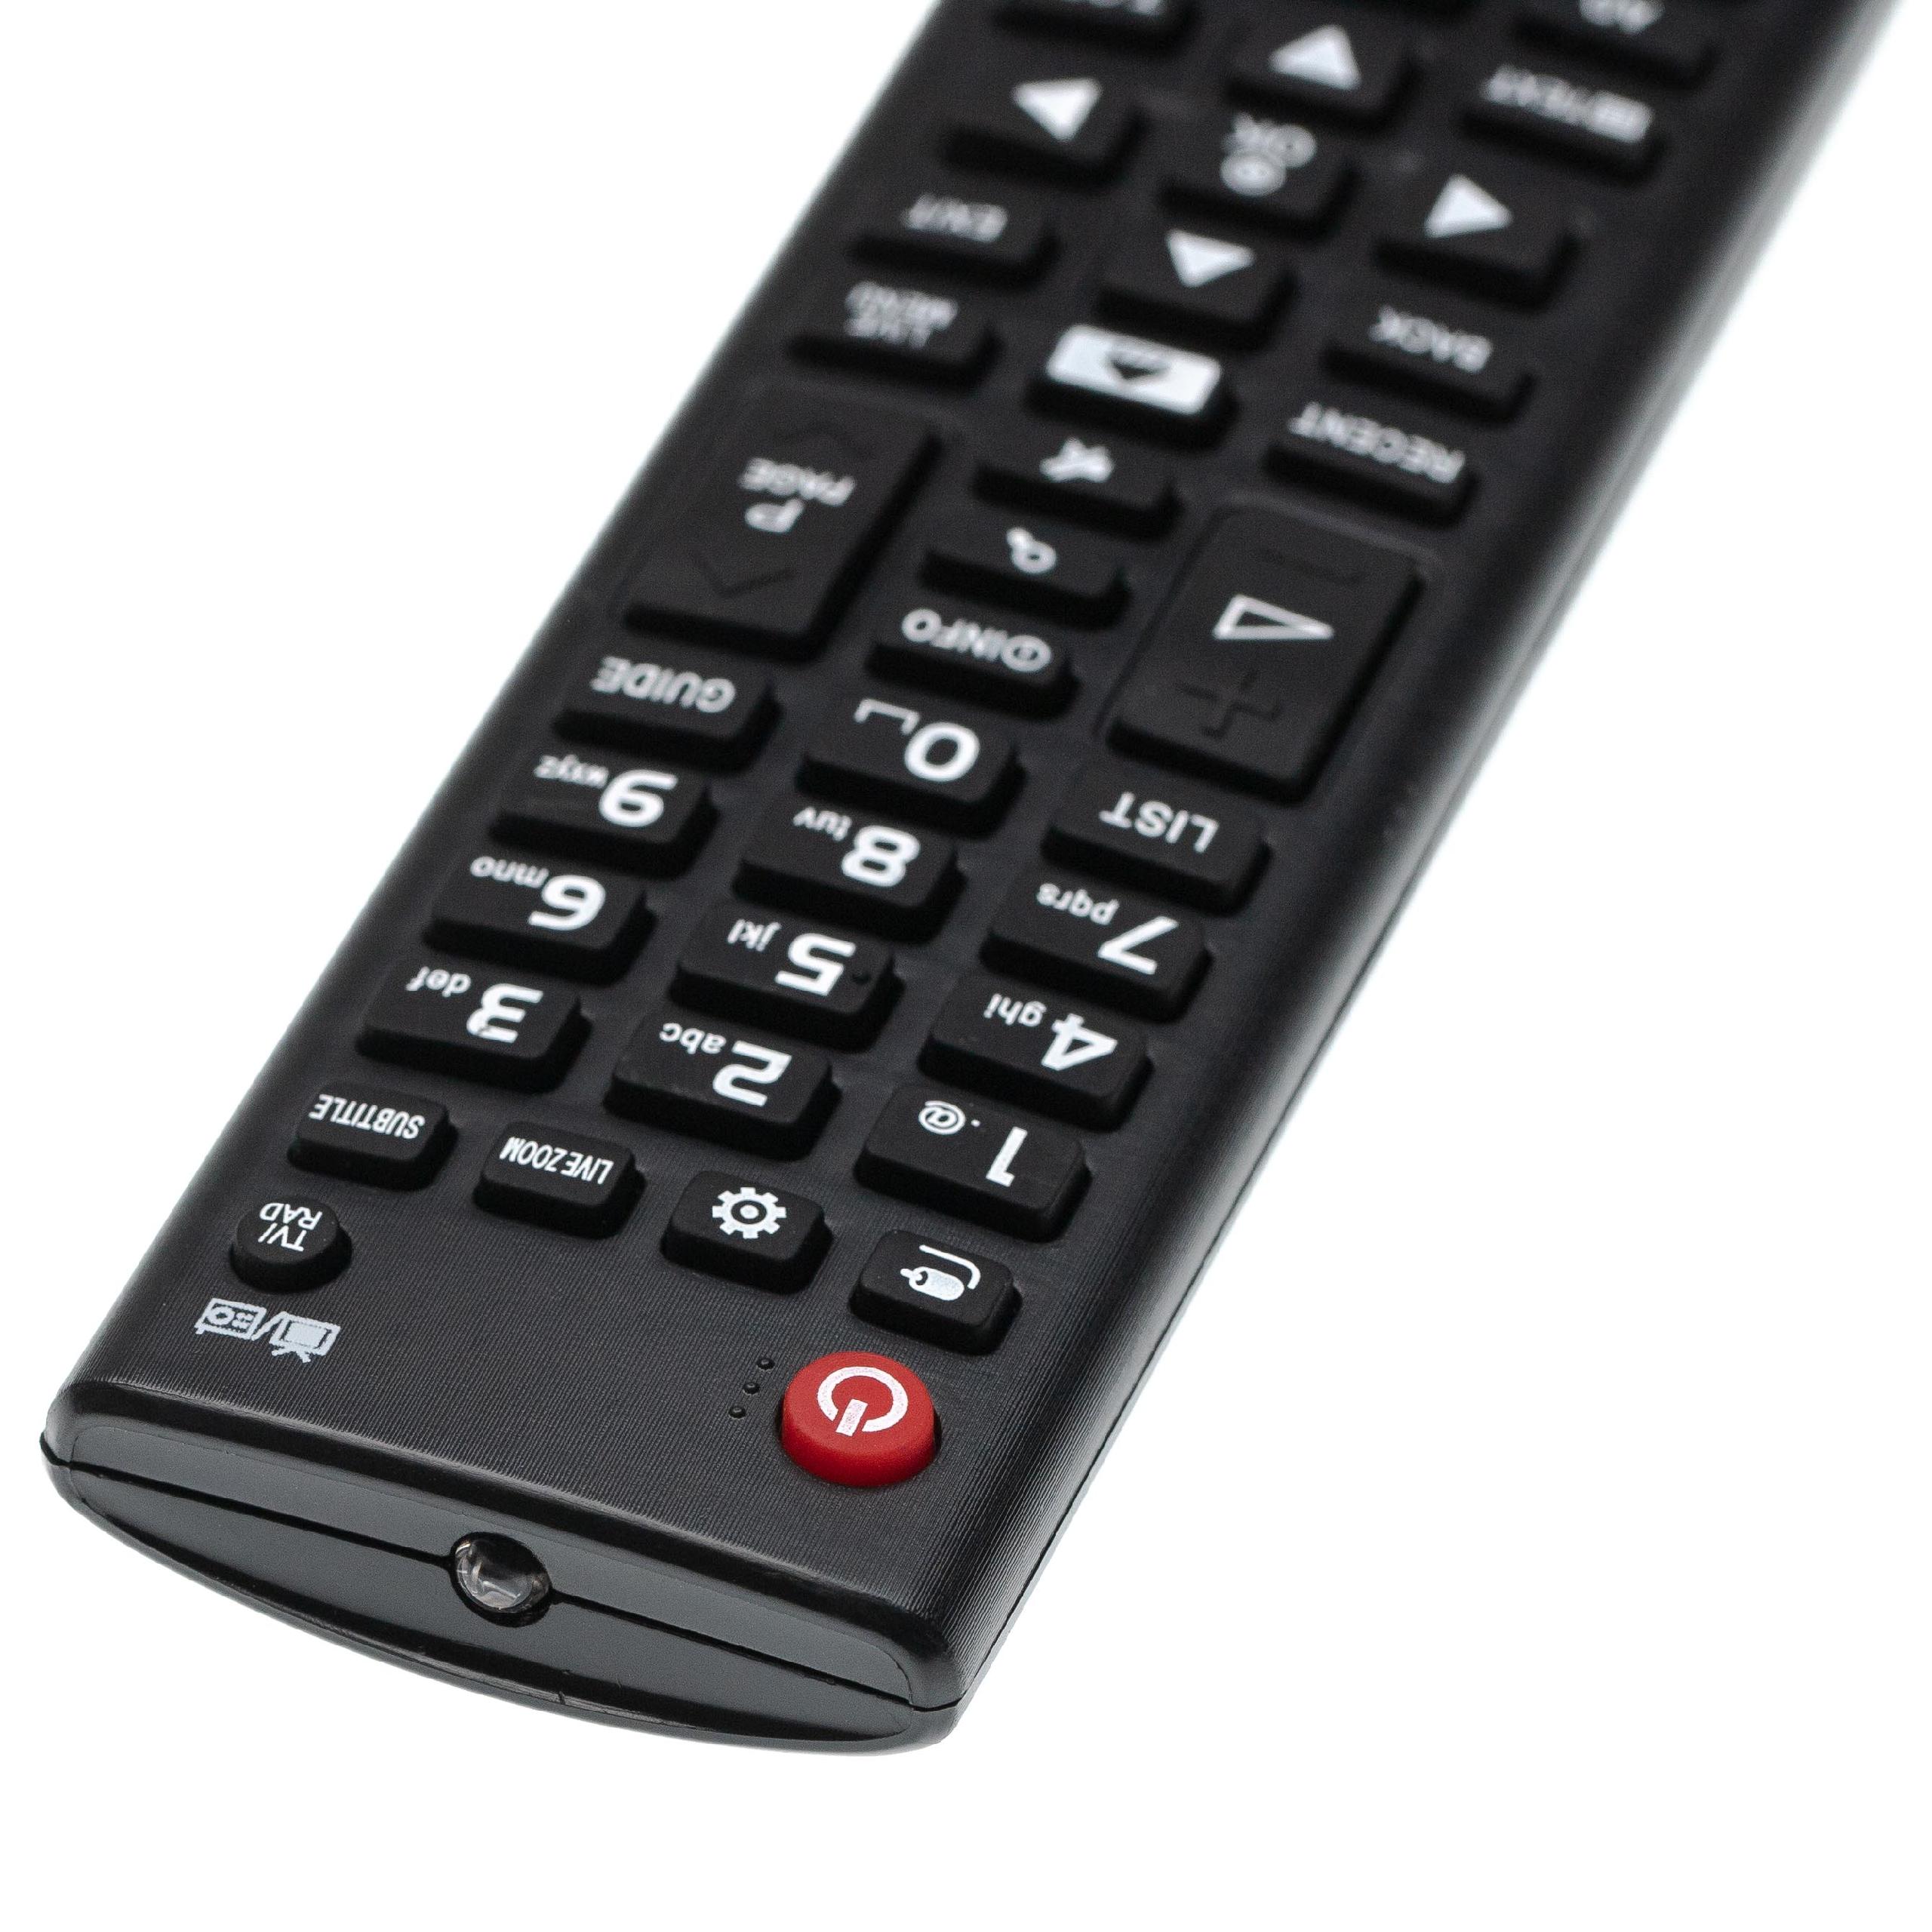 Vhbw telecomando di ricambio compatibile con LG 49LB5550, 49LH510V,  49LH513V, 49LH541V, 49LH590, 49LH590V, 49LH604 TV, televisione